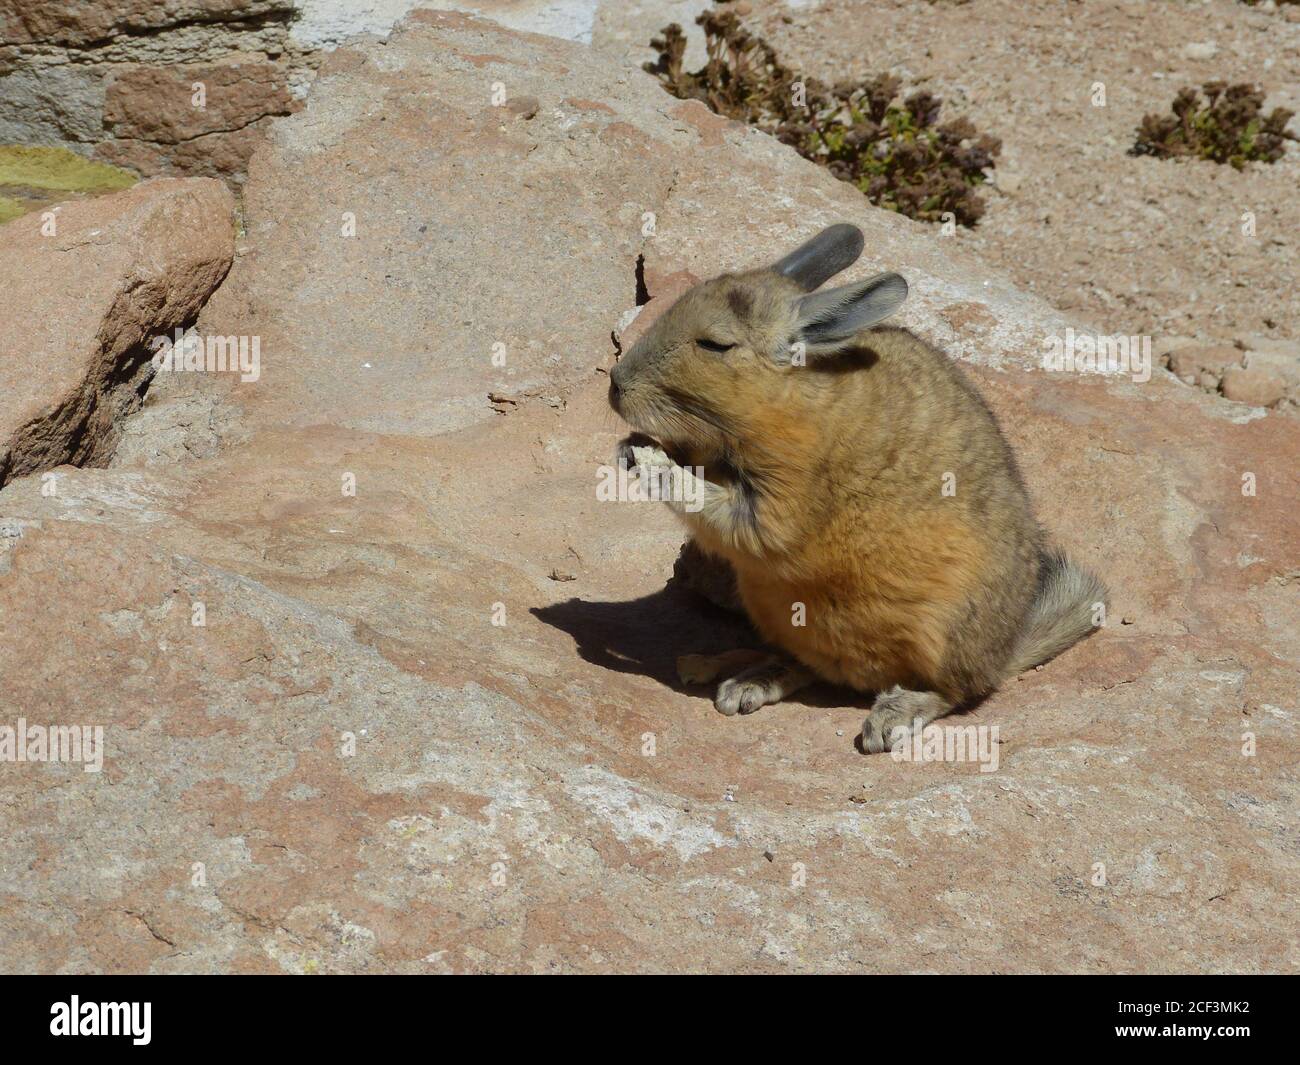 Rongeurs de montagne du sud de Viscacha Lagidium dans la famille des Chinchilidae. Vit dans les Andes, parmi les rochers. Vizcacha animal doux avec queue broussaillée. Banque D'Images